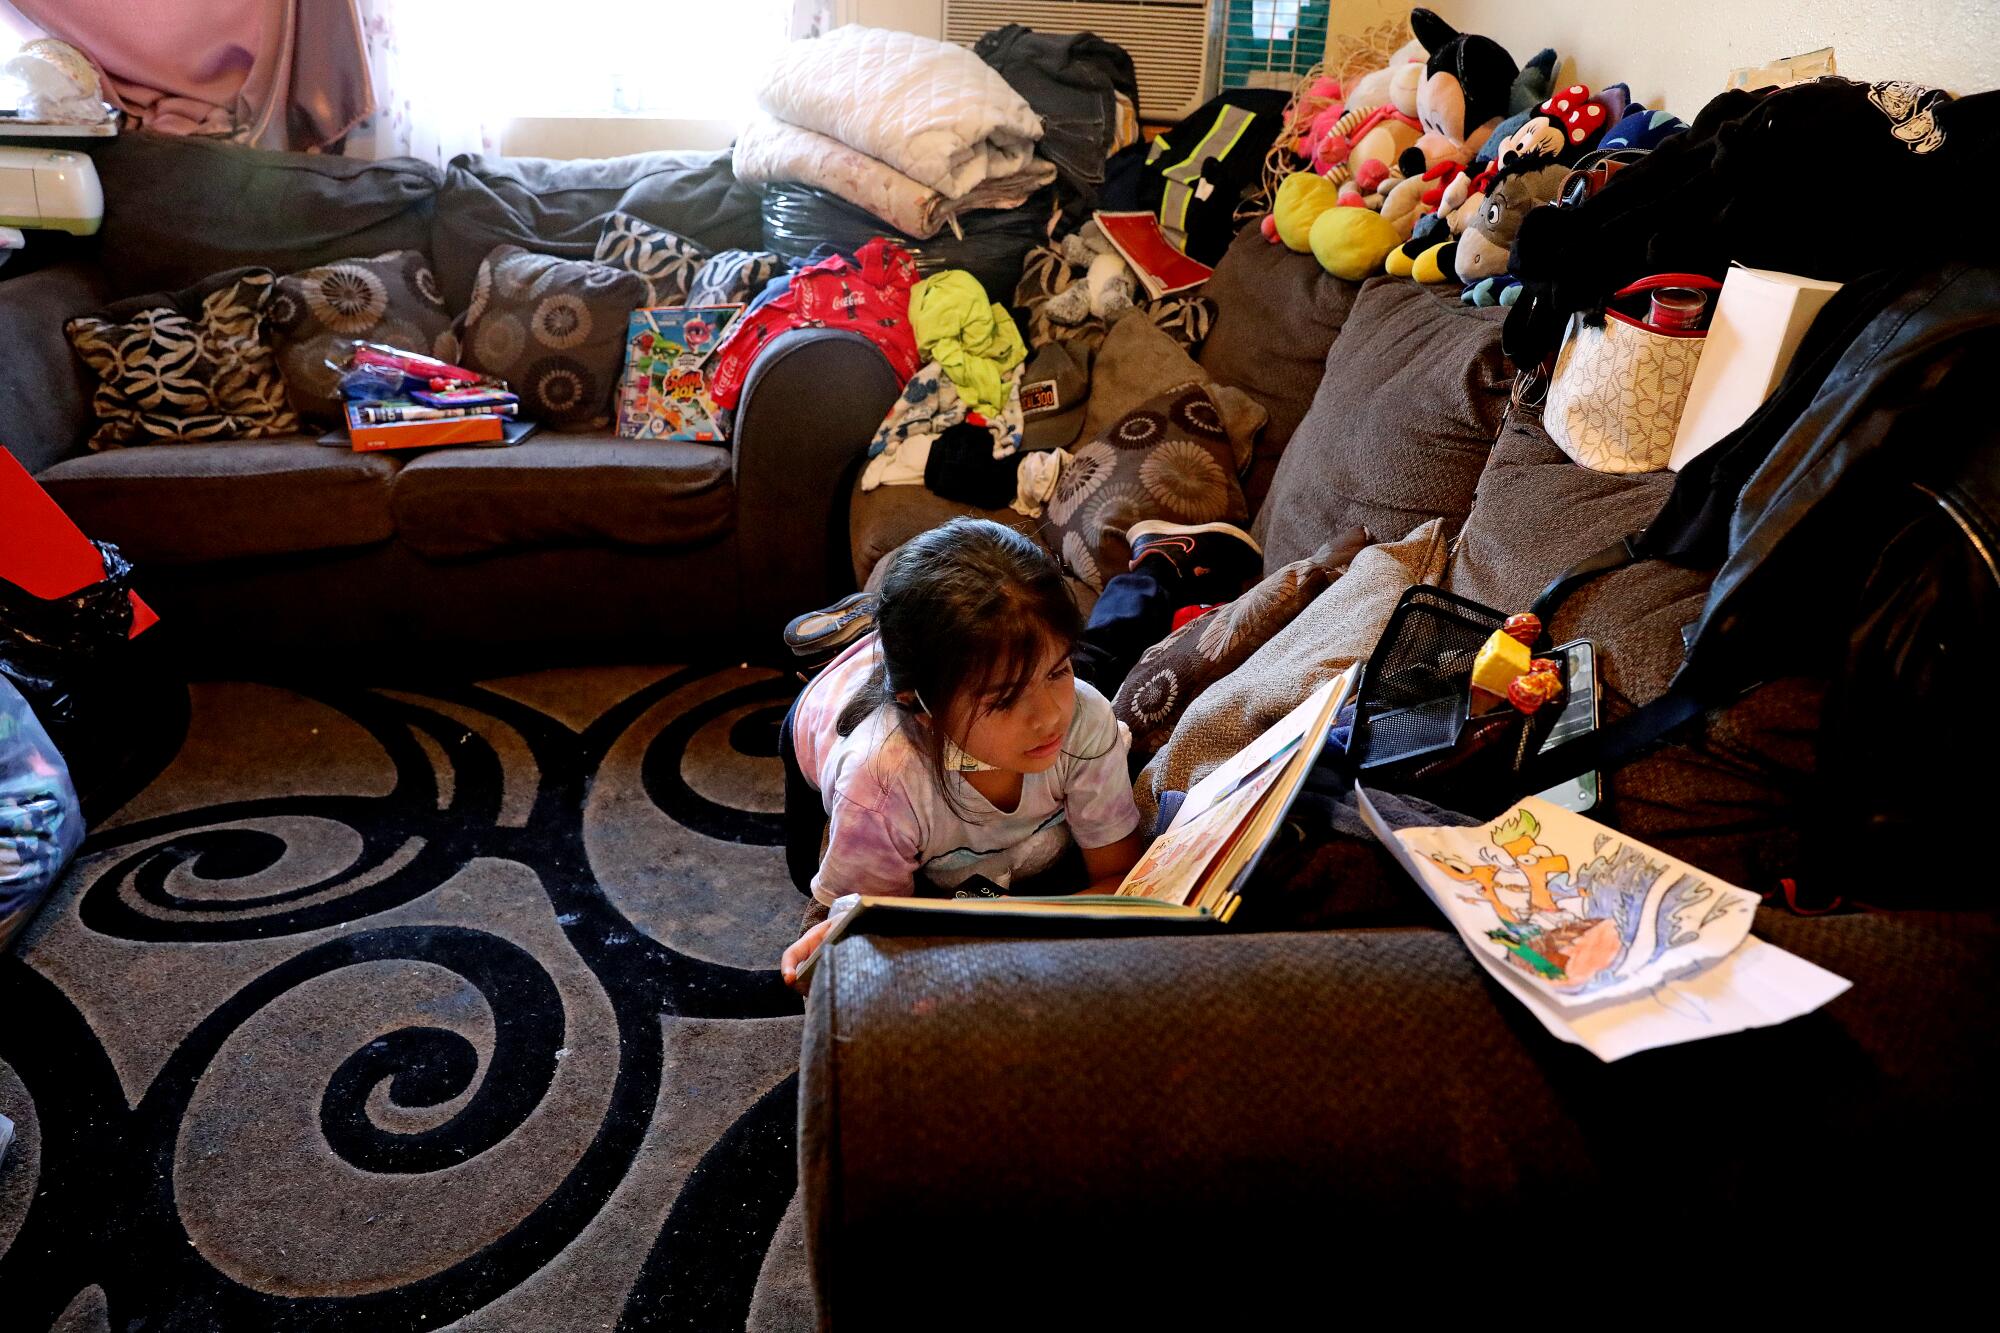 Yaretzi Galicia, de 7 años, lee en la sala de estar del departamento de una habitación de la familia en Pico-Union.